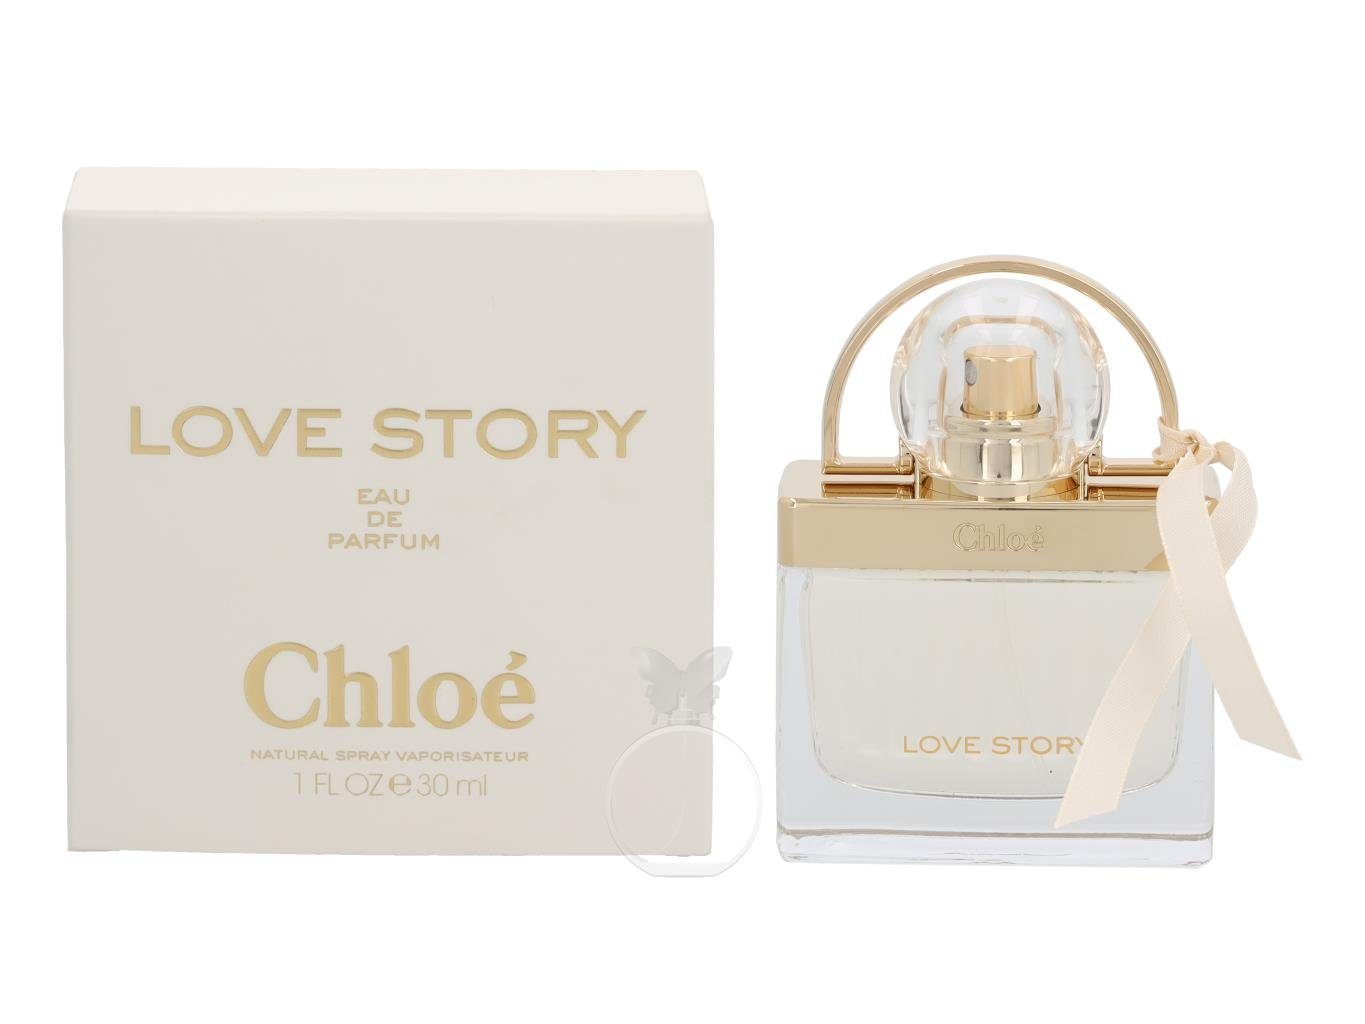 Parfum Chloe Eau Story de de Love Chloé 30 Eau ml, 1-tlg. Parfum